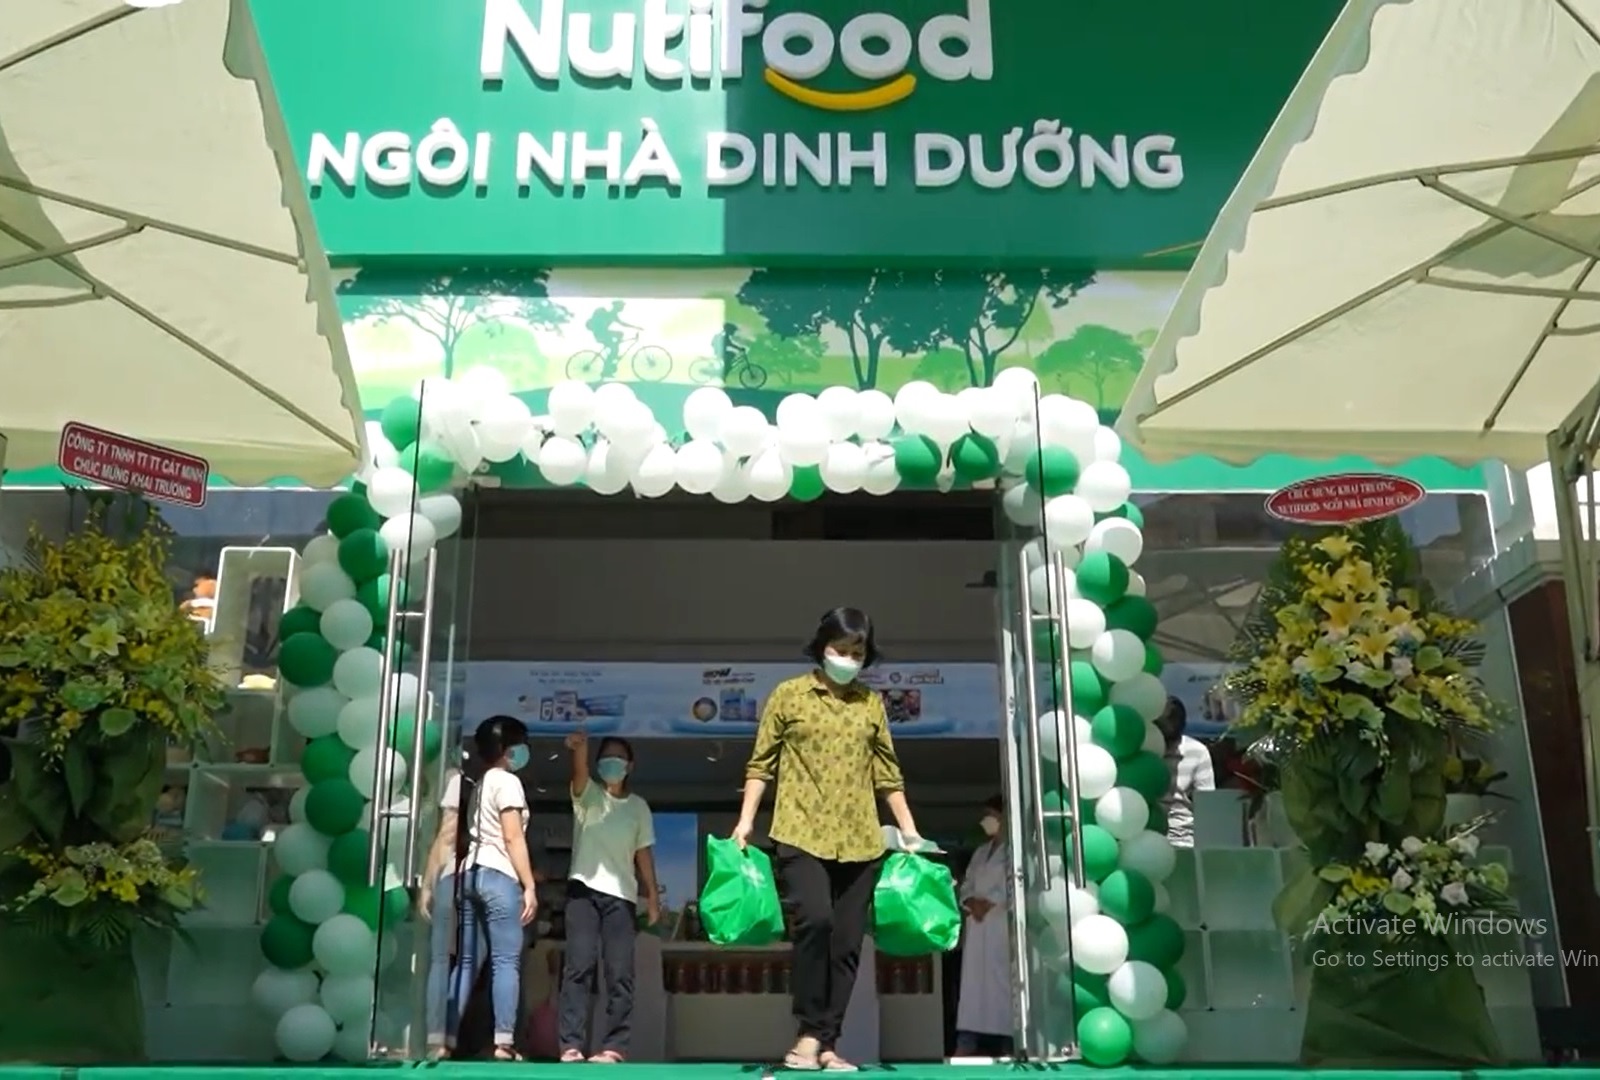 Chuỗi Ngôi nhà dinh dưỡng Nutifood được xây dựng để chăm sóc sức khỏe, phổ cập kiến thức dinh dưỡng cho người tiêu dùng - Ảnh: Nutifood